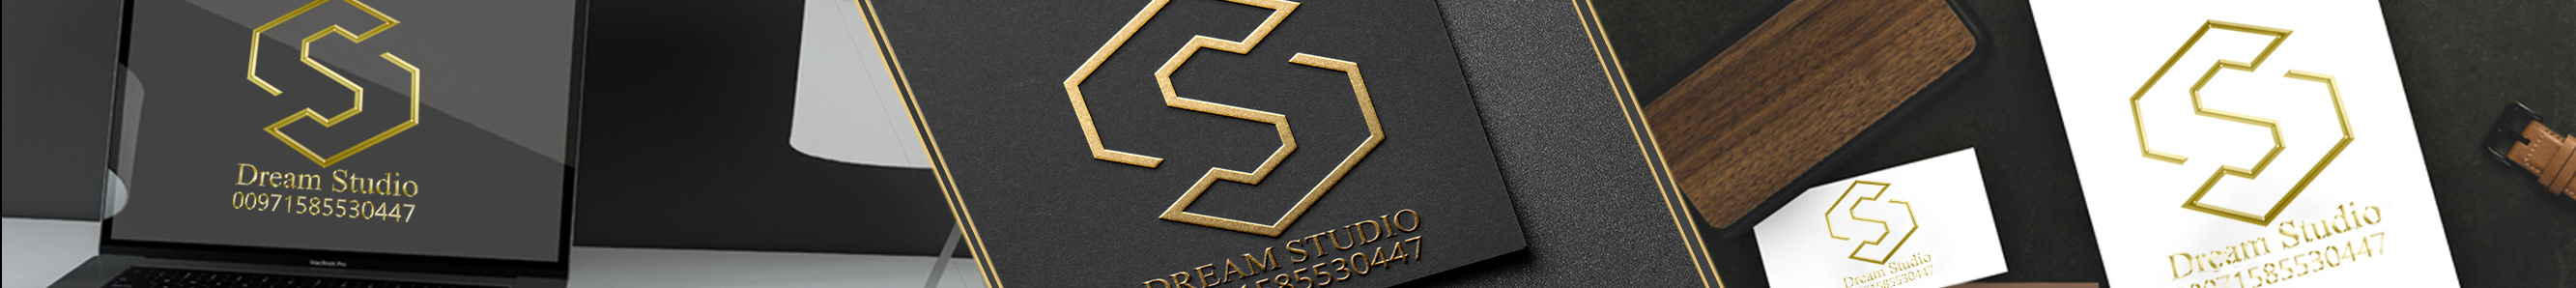 Dream Studio's profile banner